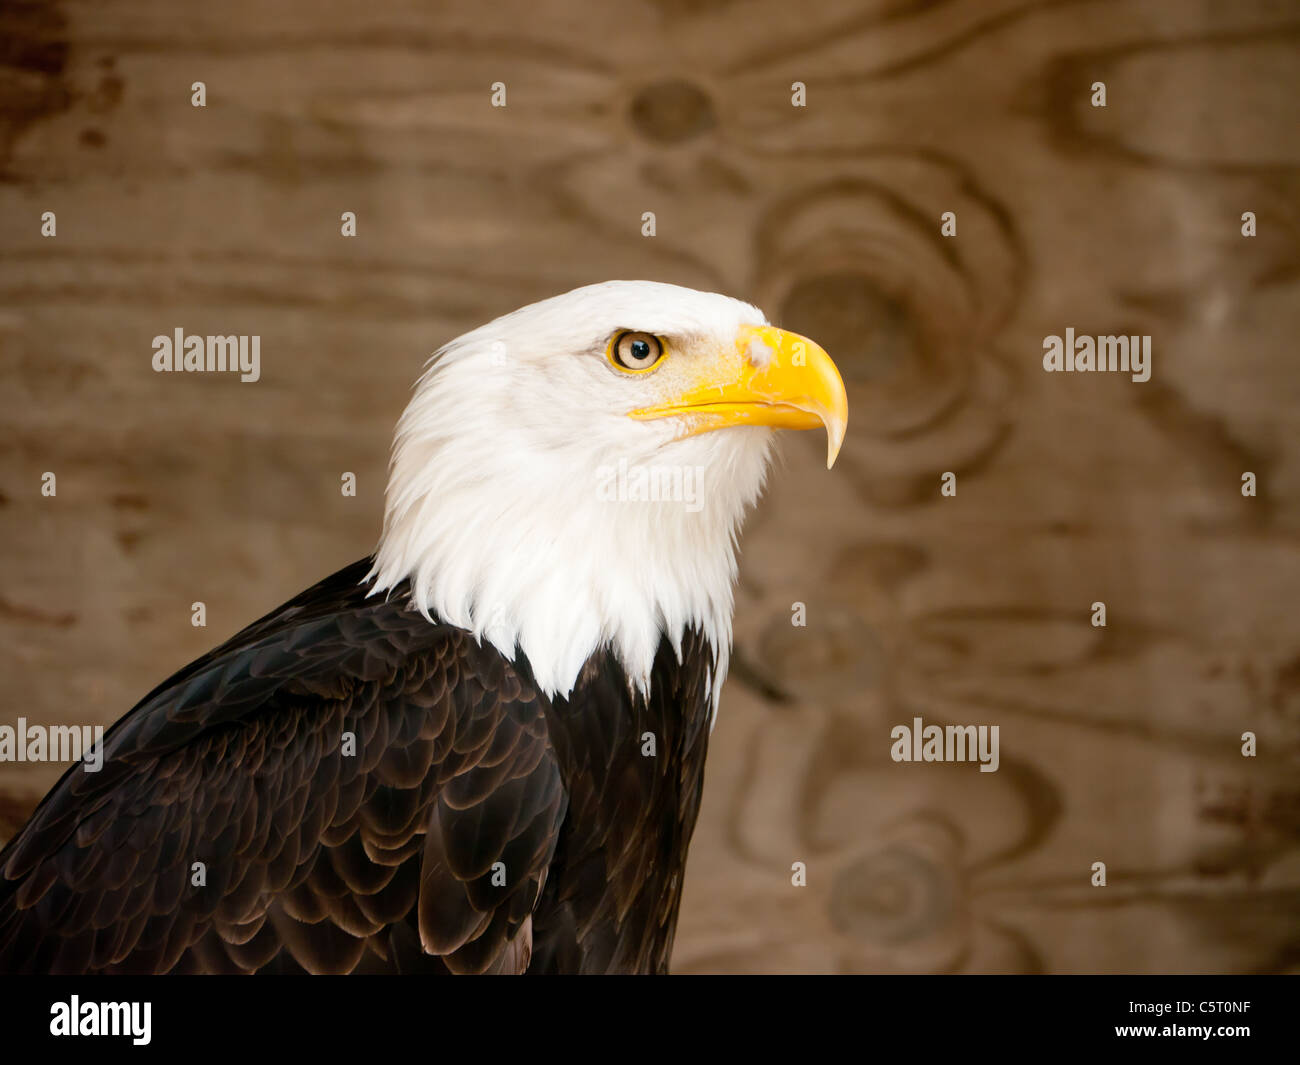 Bald Eagle in the Falconry Center, Morton-in-Marsh, United Kingdom Stock Photo